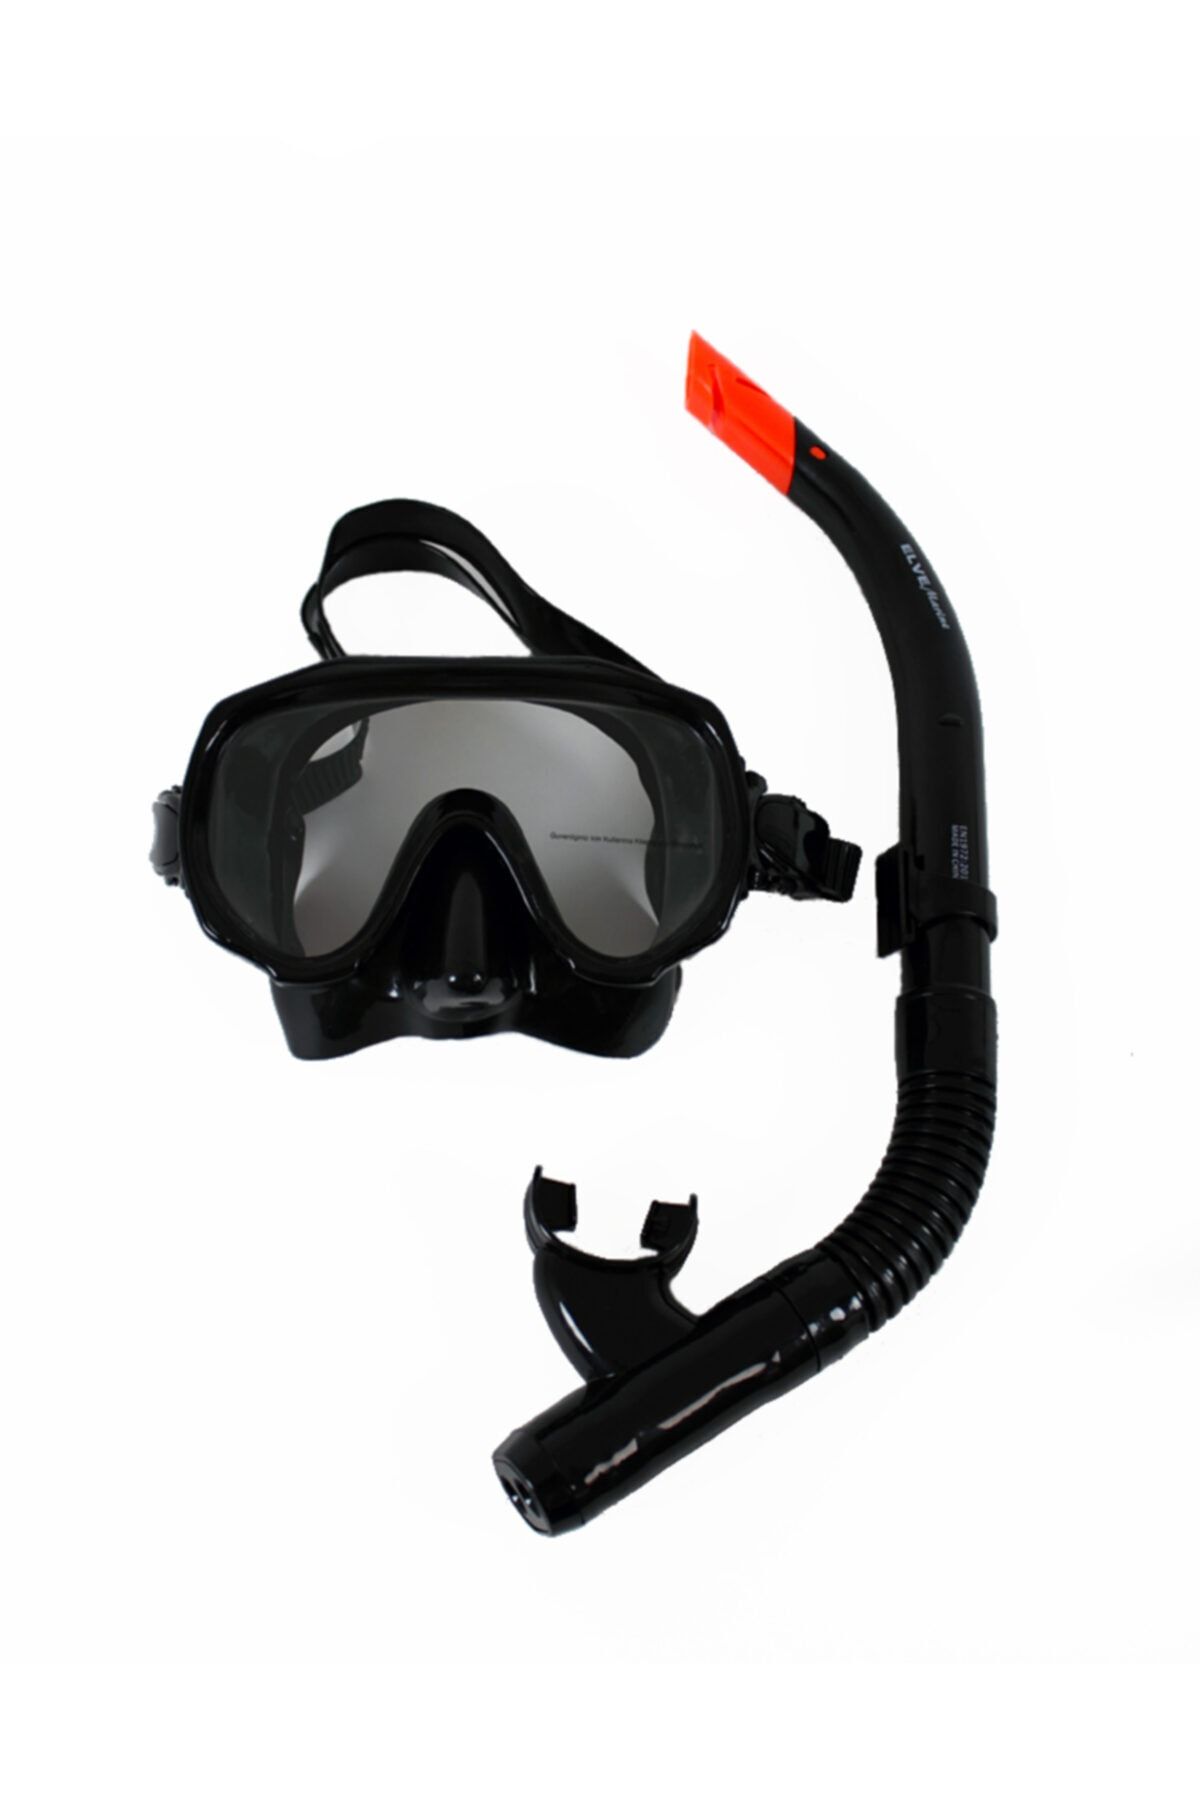 ELVE Marine Tempered Glass Mask-snorkel Set